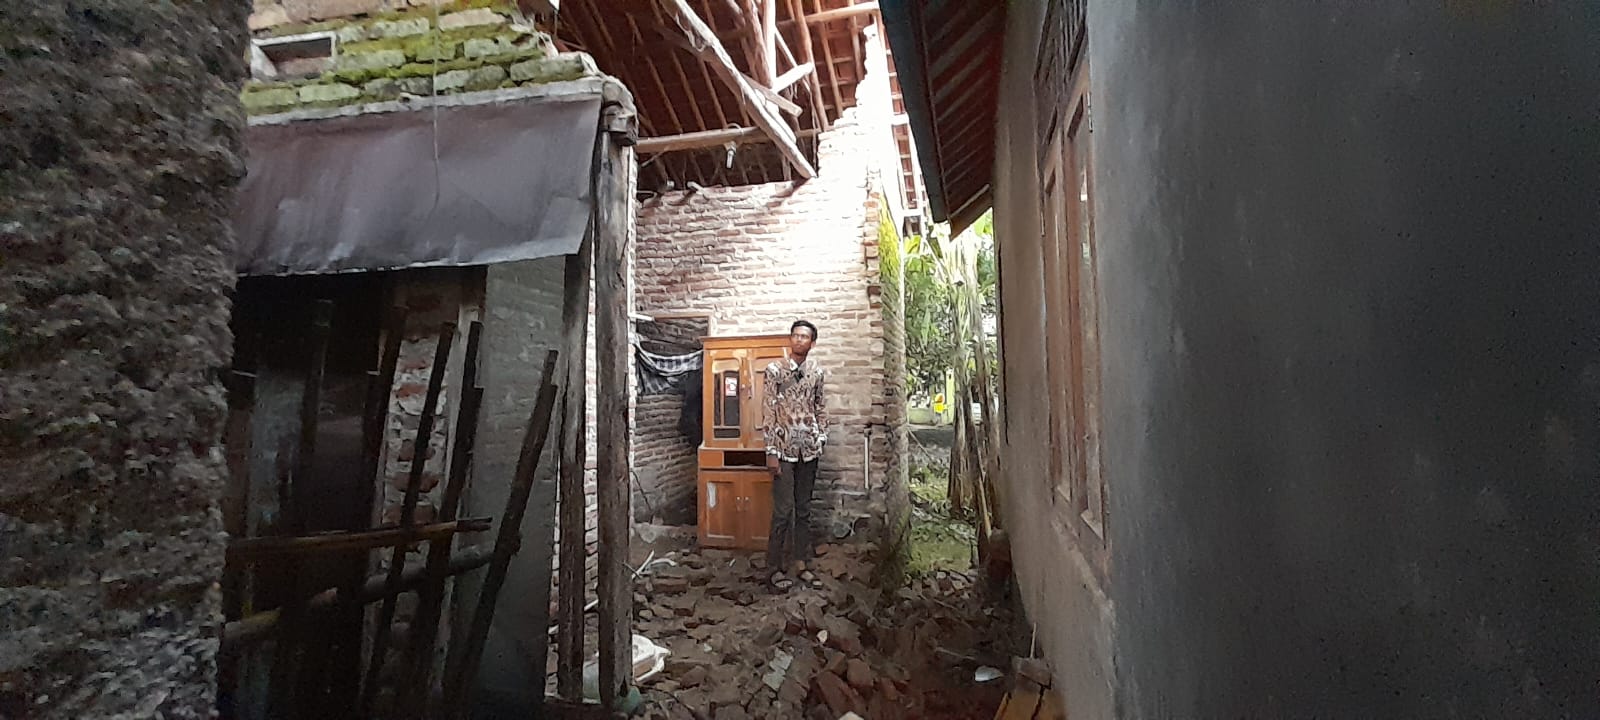 Rumah Warga Desa Luwung Kecamatan Mundu Roboh Diterjang Banjir, Seperti Ini Kondisinya